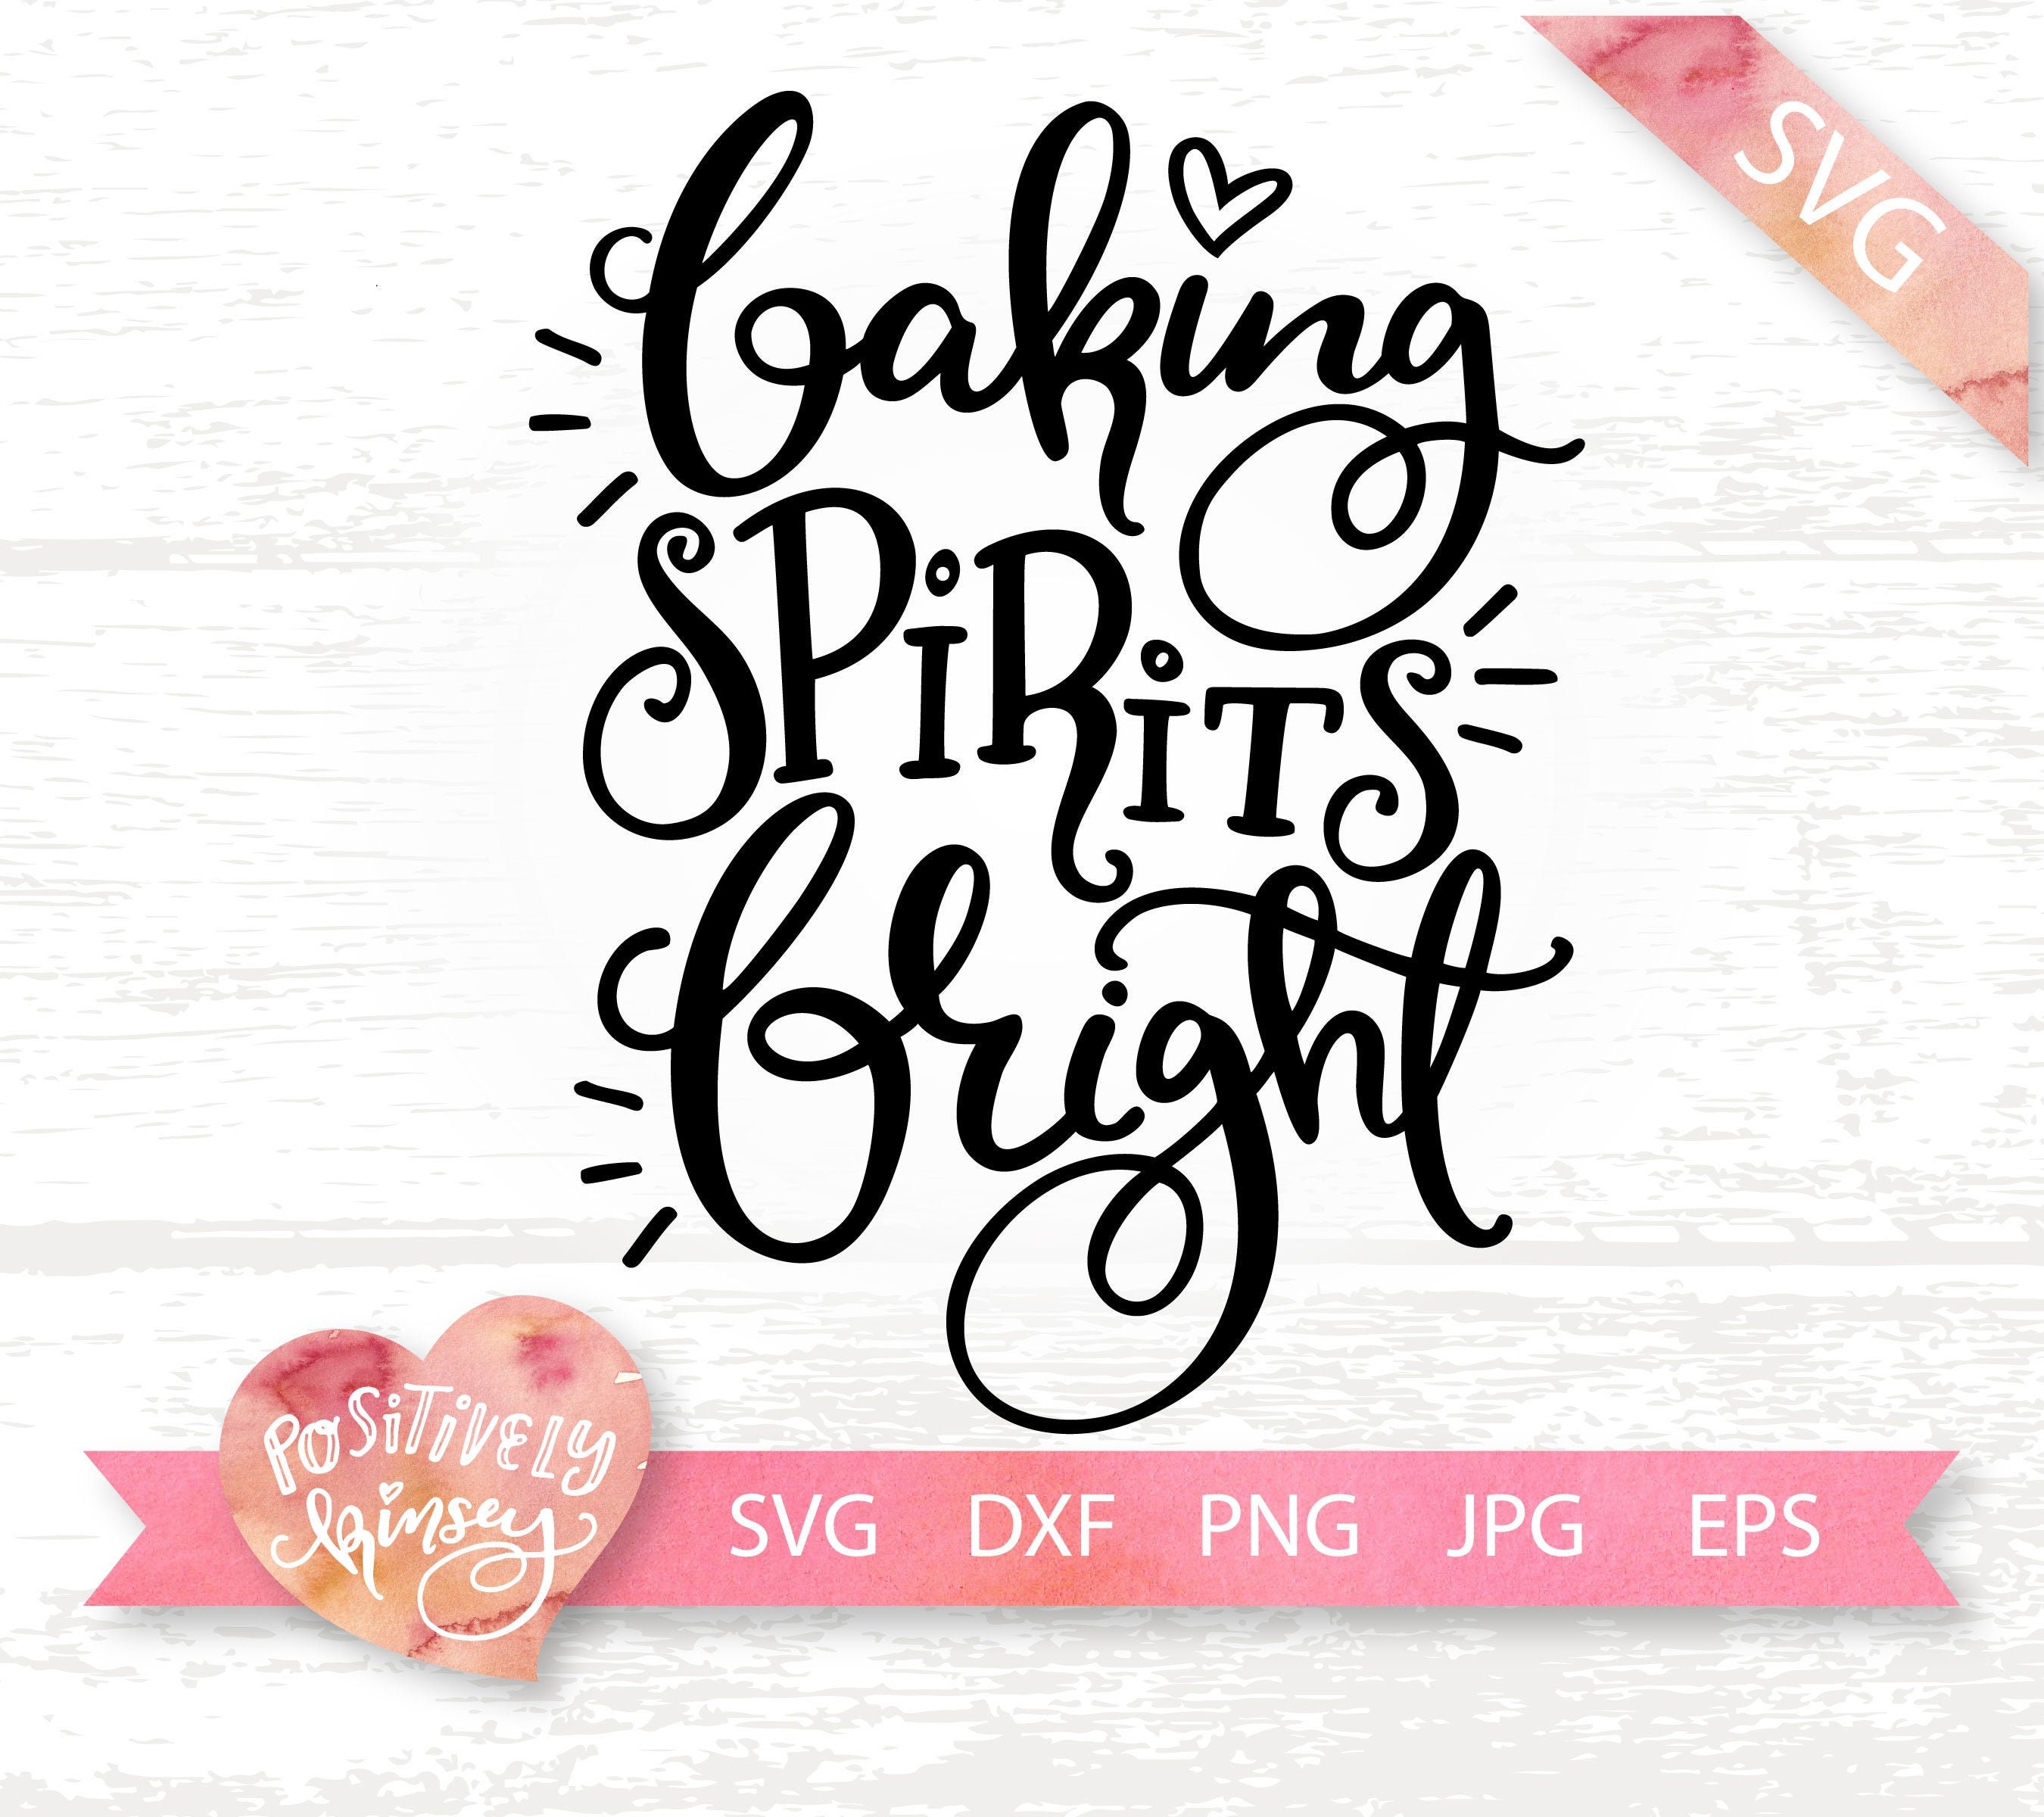 Download Baking Spirits Bright SVG File Christmas Pot Holder Svg | Etsy